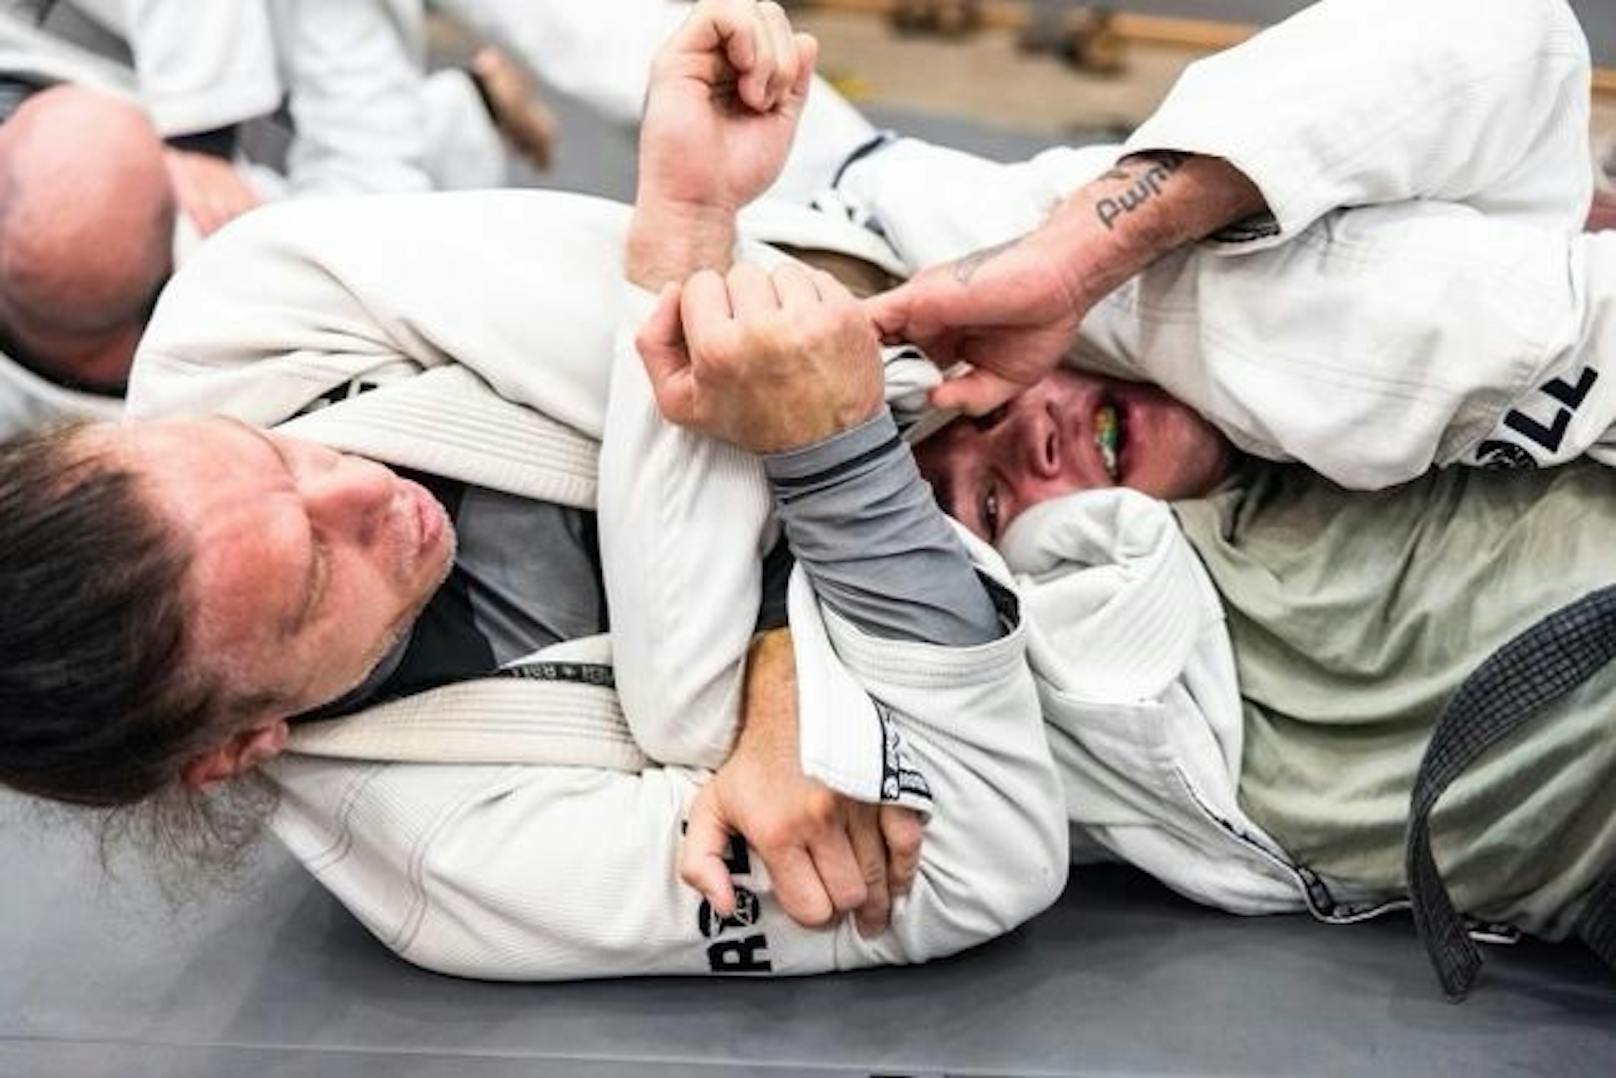 Der steirische Pornostar Mick Blue hält nun den schwarzen Gürtel in der Kampfkunst des Brasilianischen Jiu-Jitsu